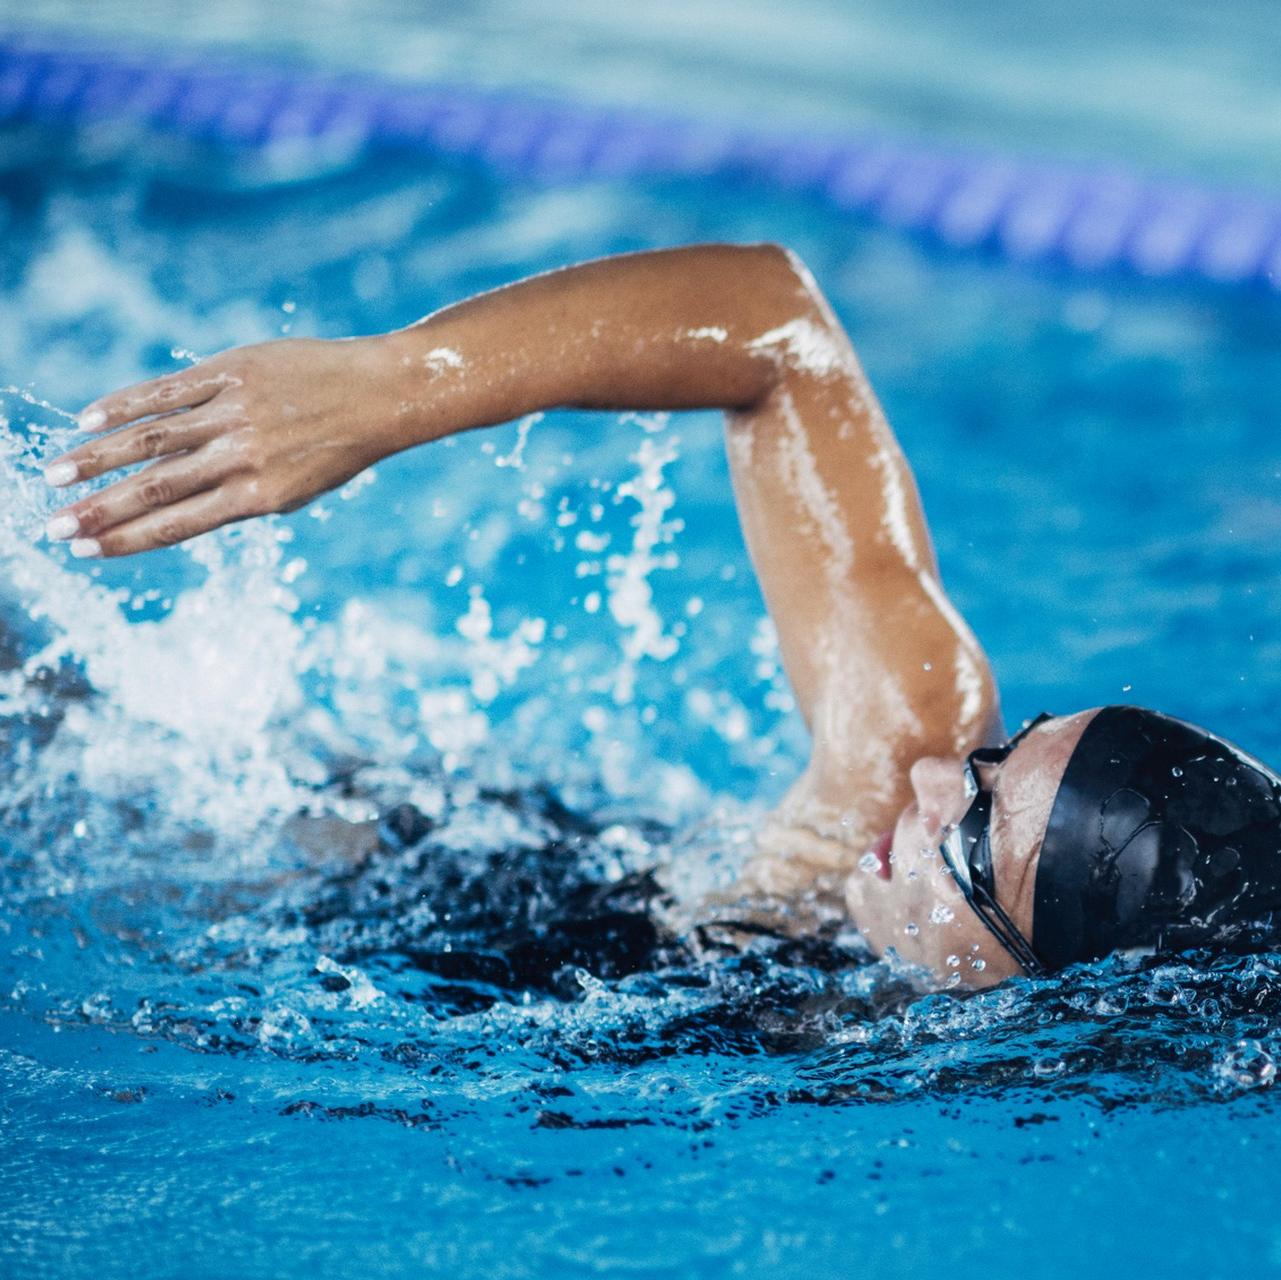 La natation, accessible et excellente pour la santé